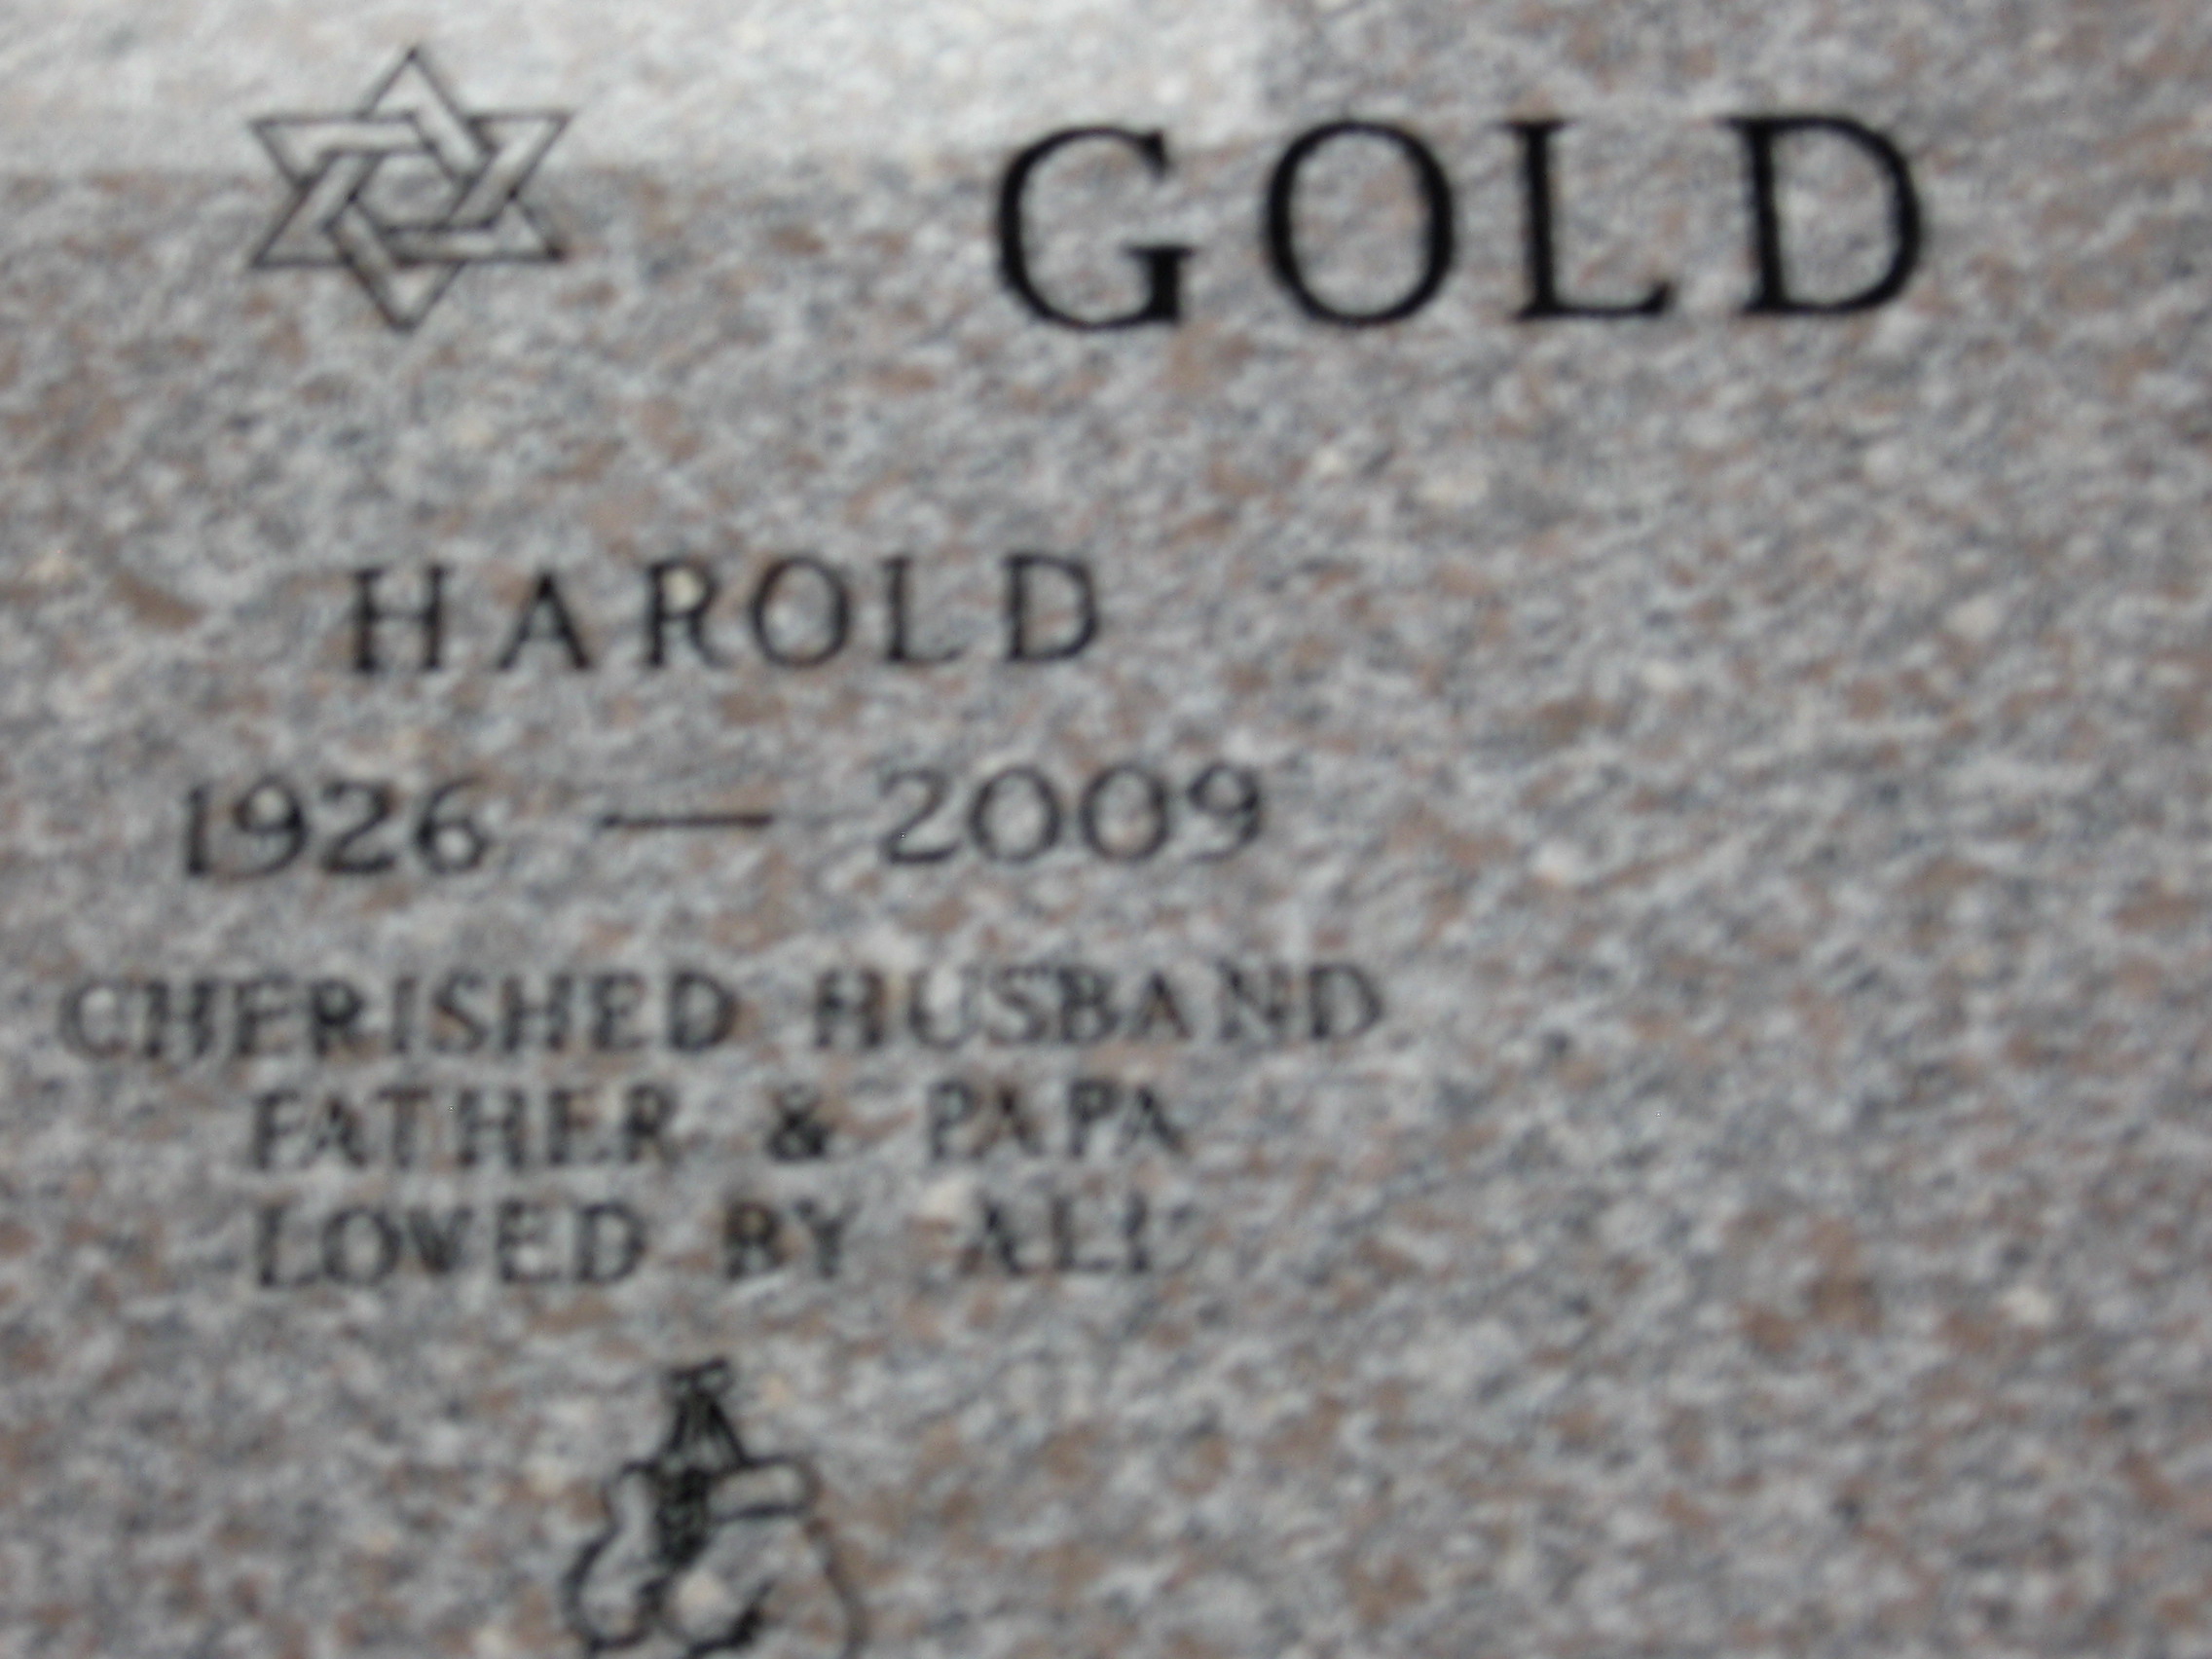 Harold Gold